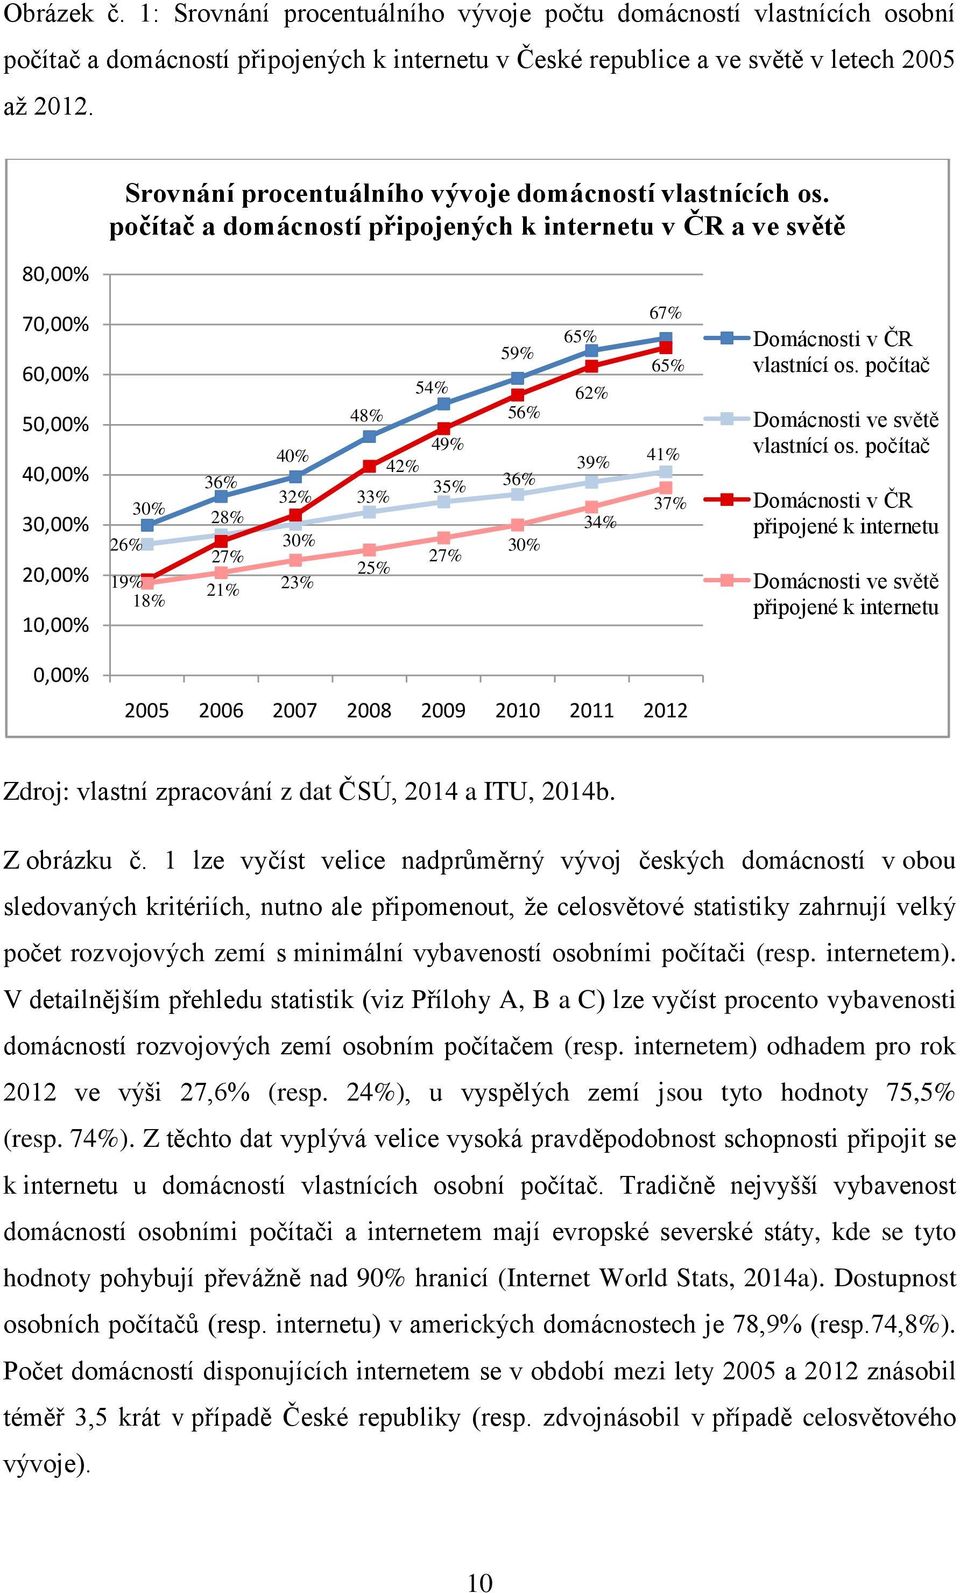 počítač a domácností připojených k internetu v ČR a ve světě 70,00% 60,00% 50,00% 40,00% 30,00% 20,00% 10,00% 30% 26% 19% 18% 36% 28% 27% 21% 40% 32% 30% 23% 54% 48% 49% 42% 35% 33% 27% 25% 59% 65%